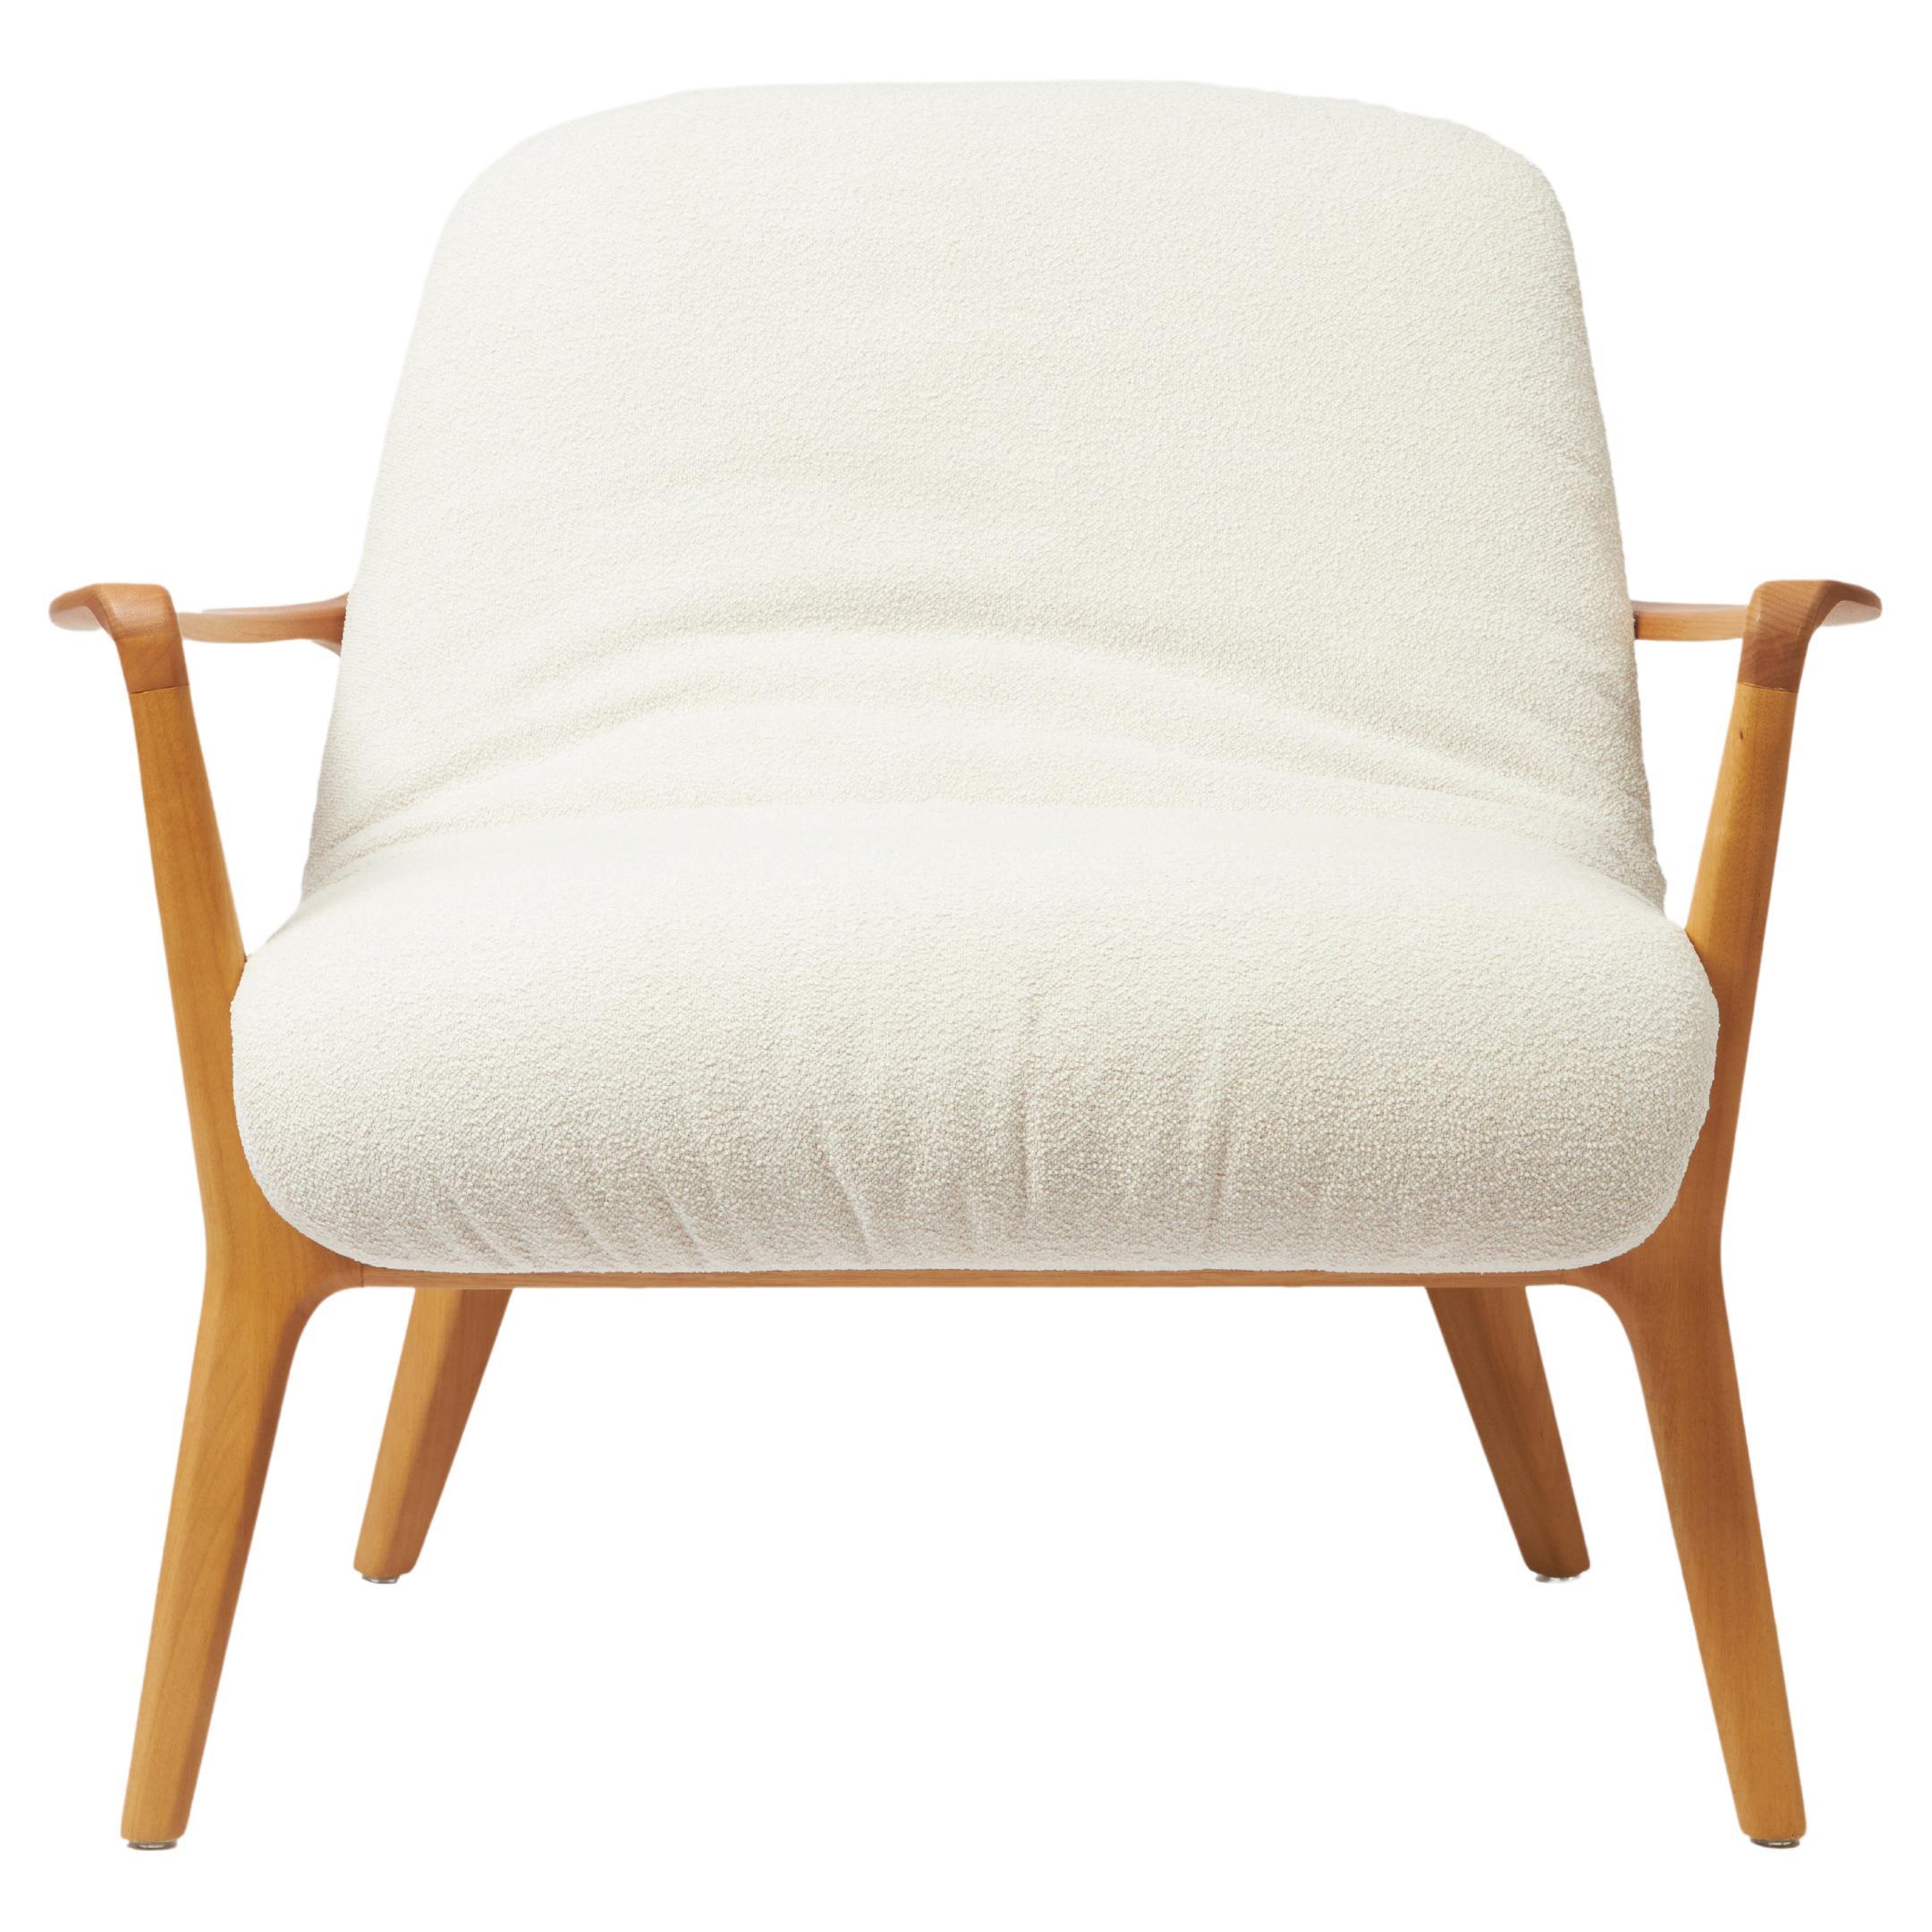 Fauteuil Insigne de style minimaliste sculpté en bois massif, sièges en textiles